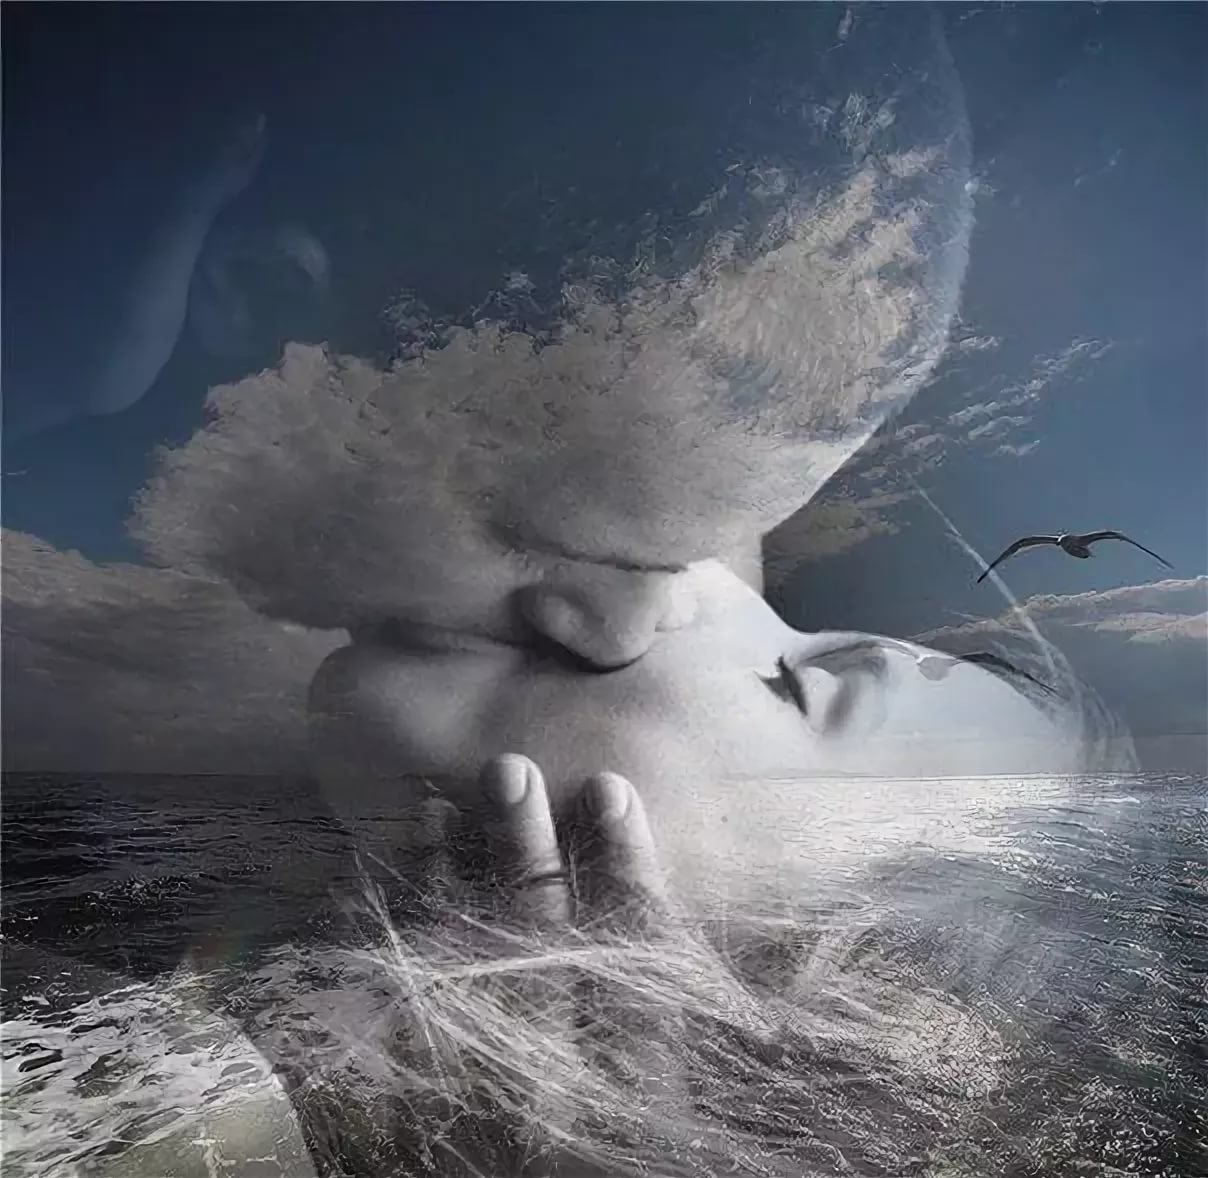 Это вечность где здесь в морской воде. Вечность любви. Нежность души. Раствориться в нежности. Влюбленные в облаках.